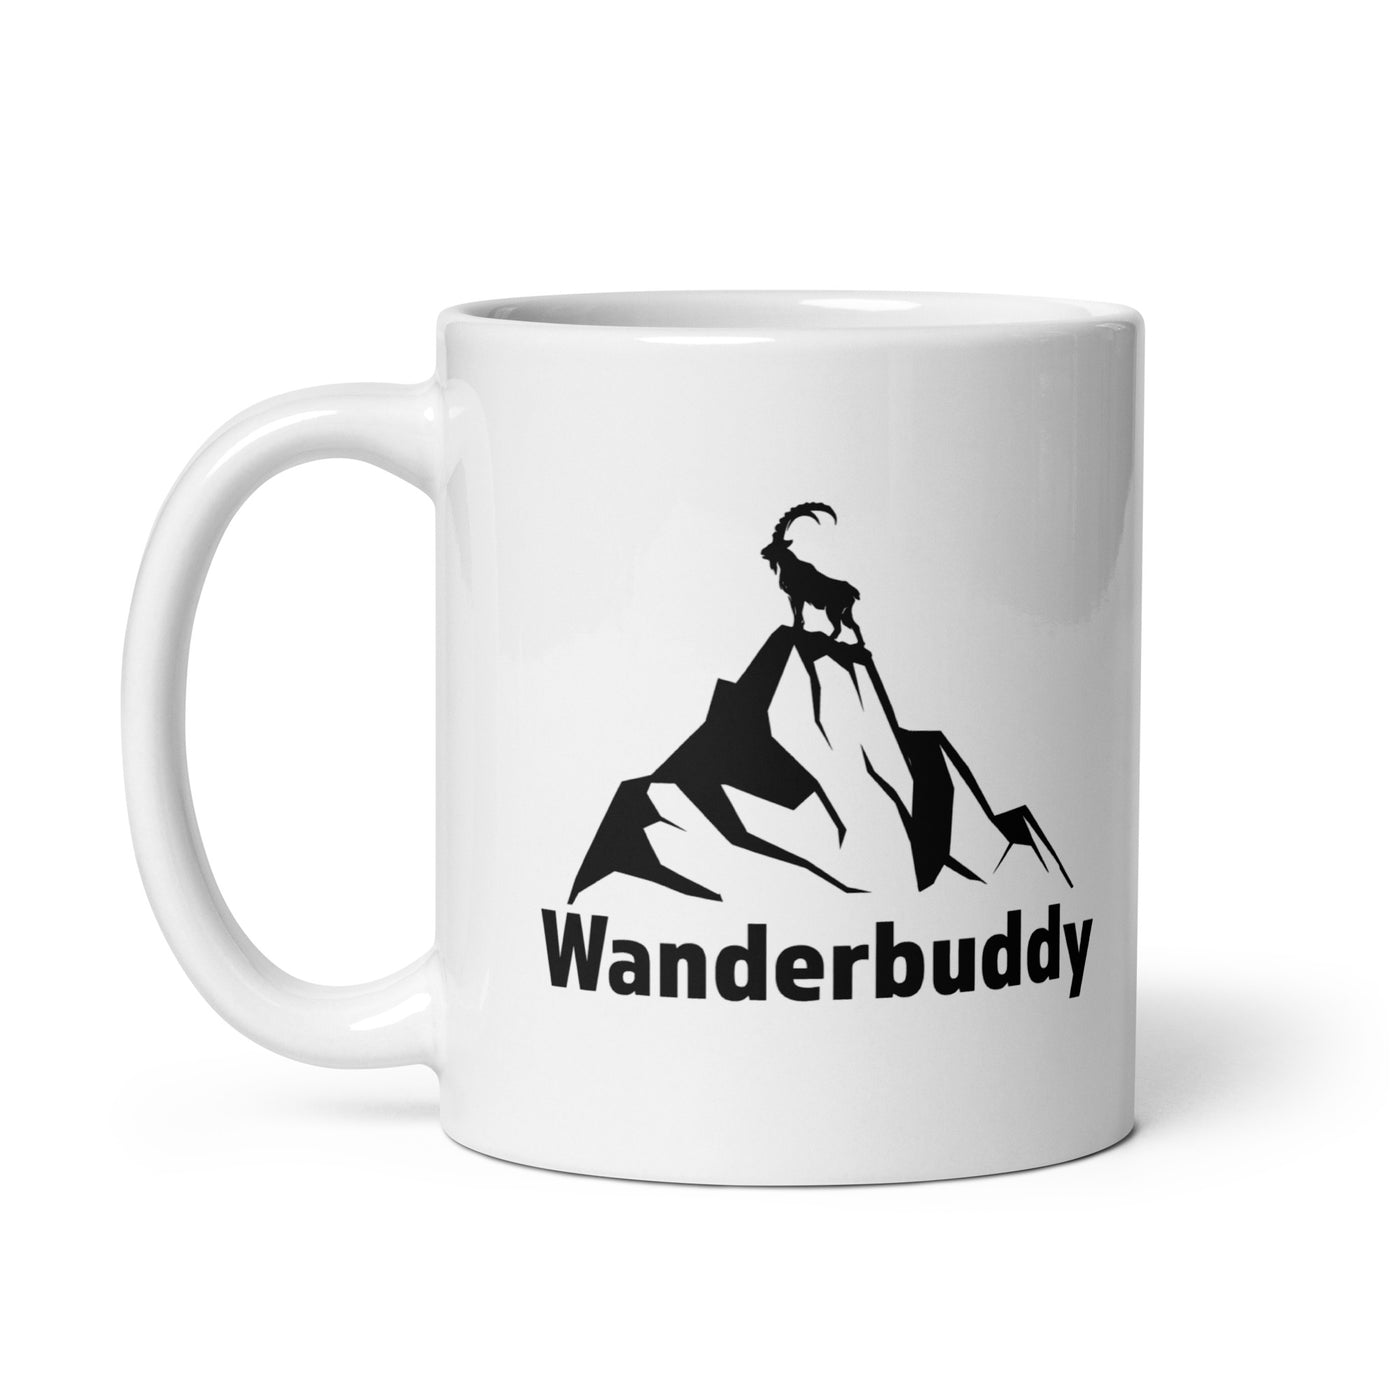 Wanderbuddy - Tasse wandern 11oz